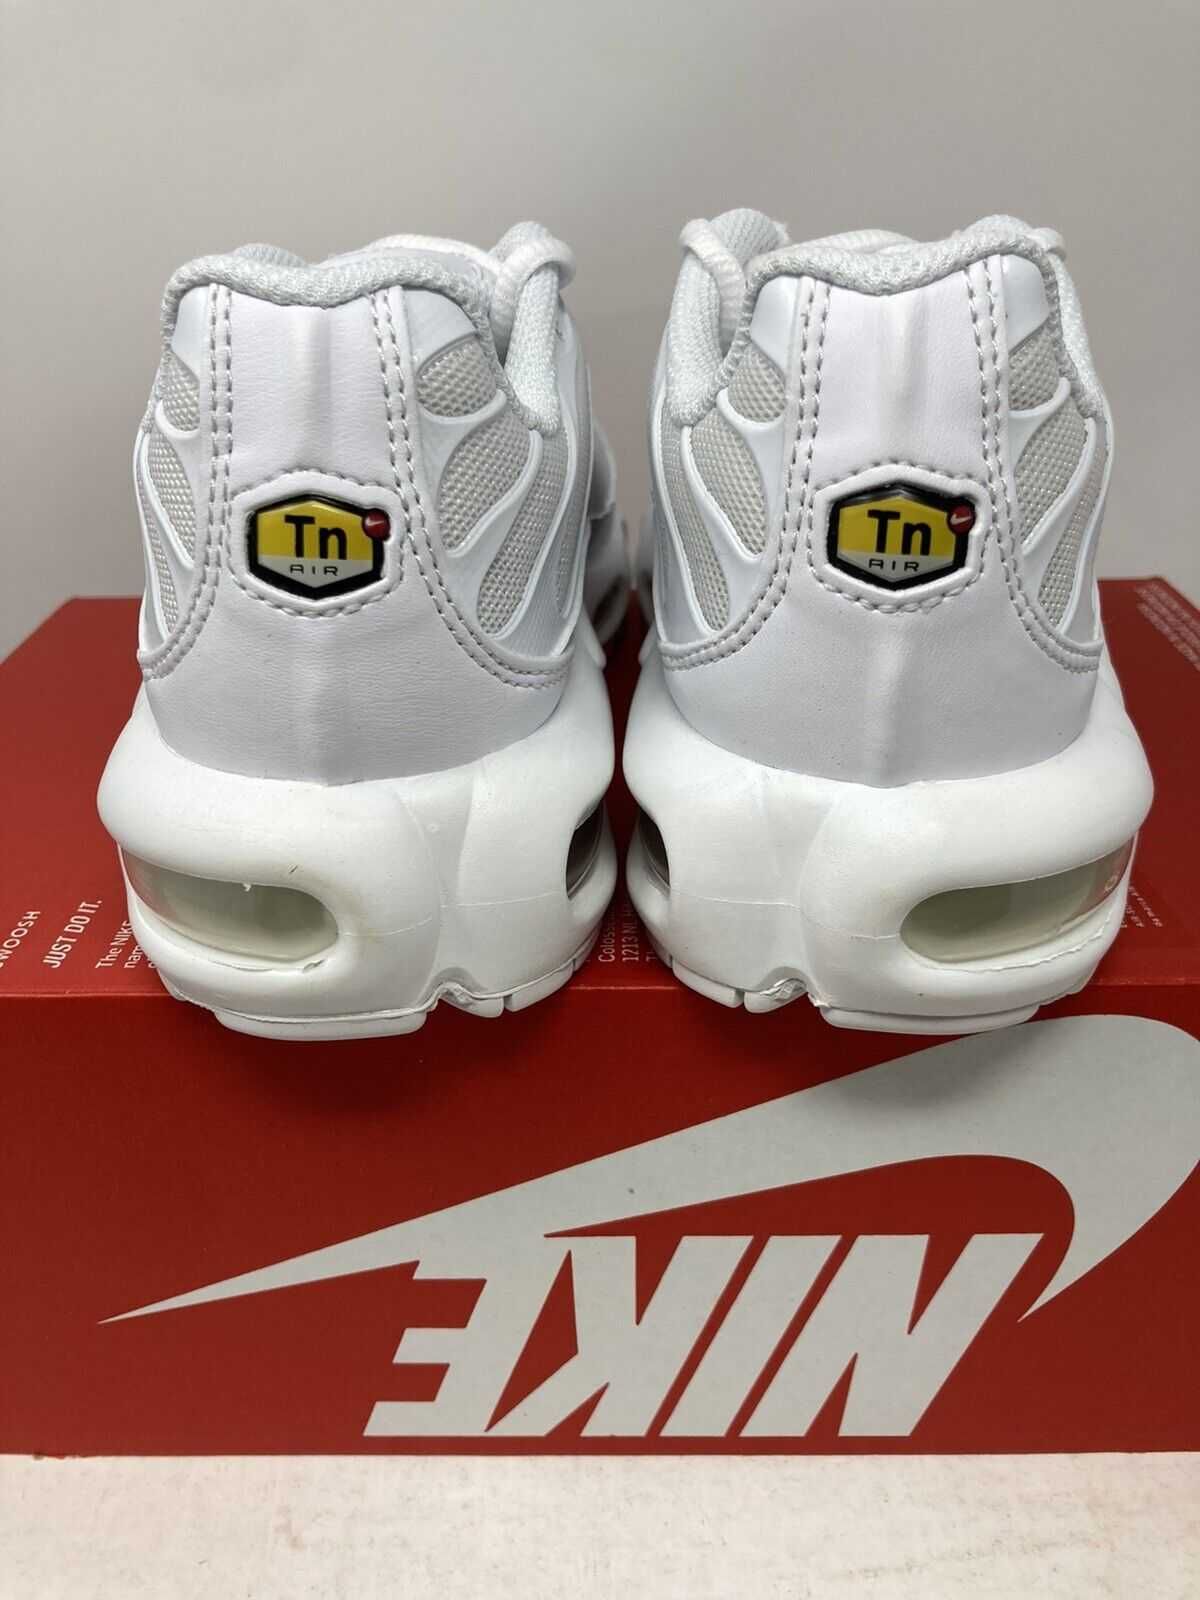 Adidasi Nike Tn Air max plus white Pure platinum 100% originali-44.5